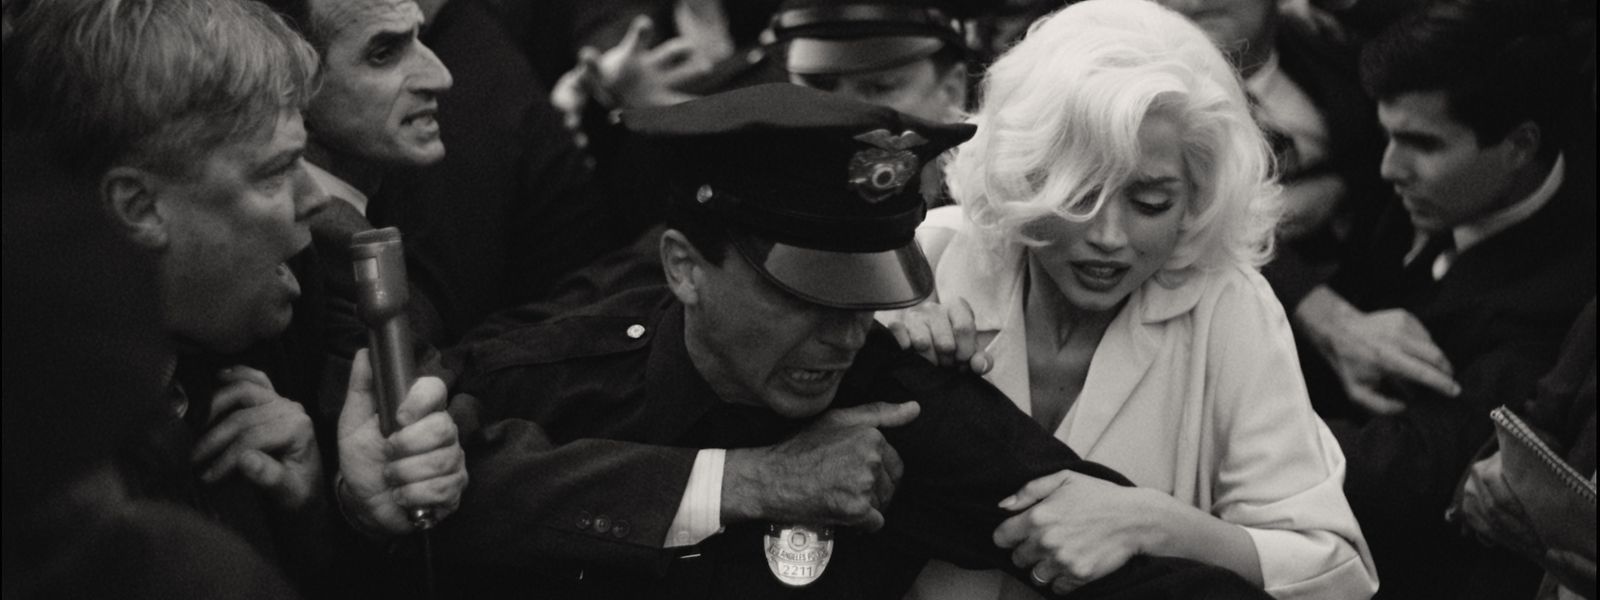 Gefeiert und verfolgt: Marilyn Monroe (Ana de Armas) wird von Fans und Medienvertretern bedrängt.